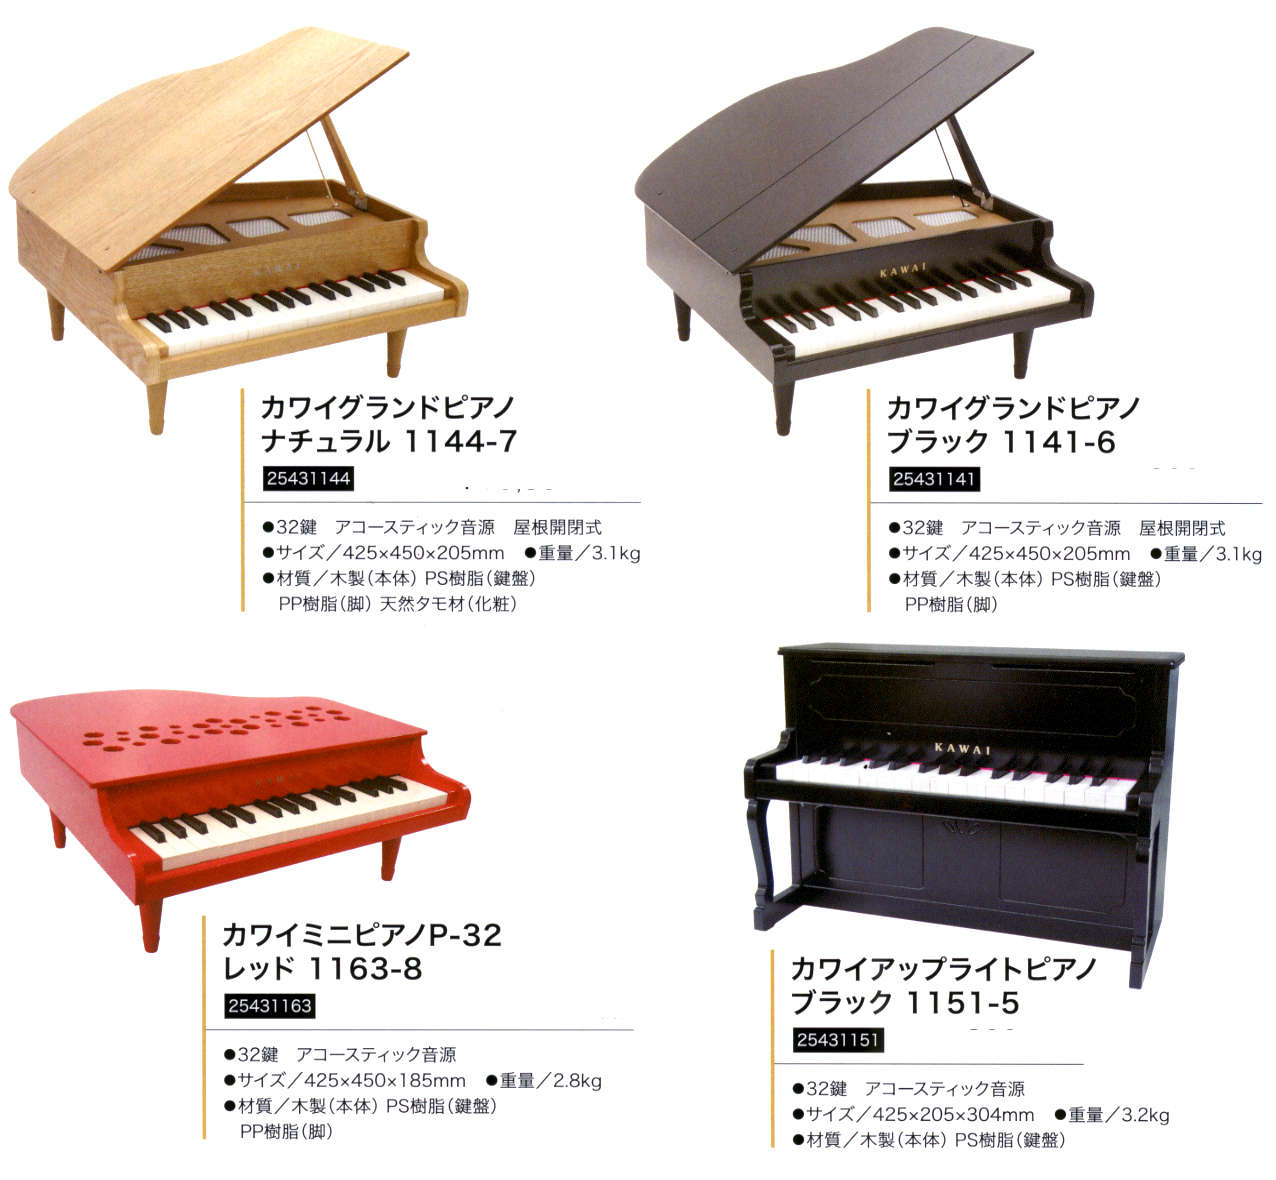 限定特価 KAWAI グランドピアノ ブラック 1141 本体サイズ:425×450×205 mm 脚付き 蓋閉じ状態 